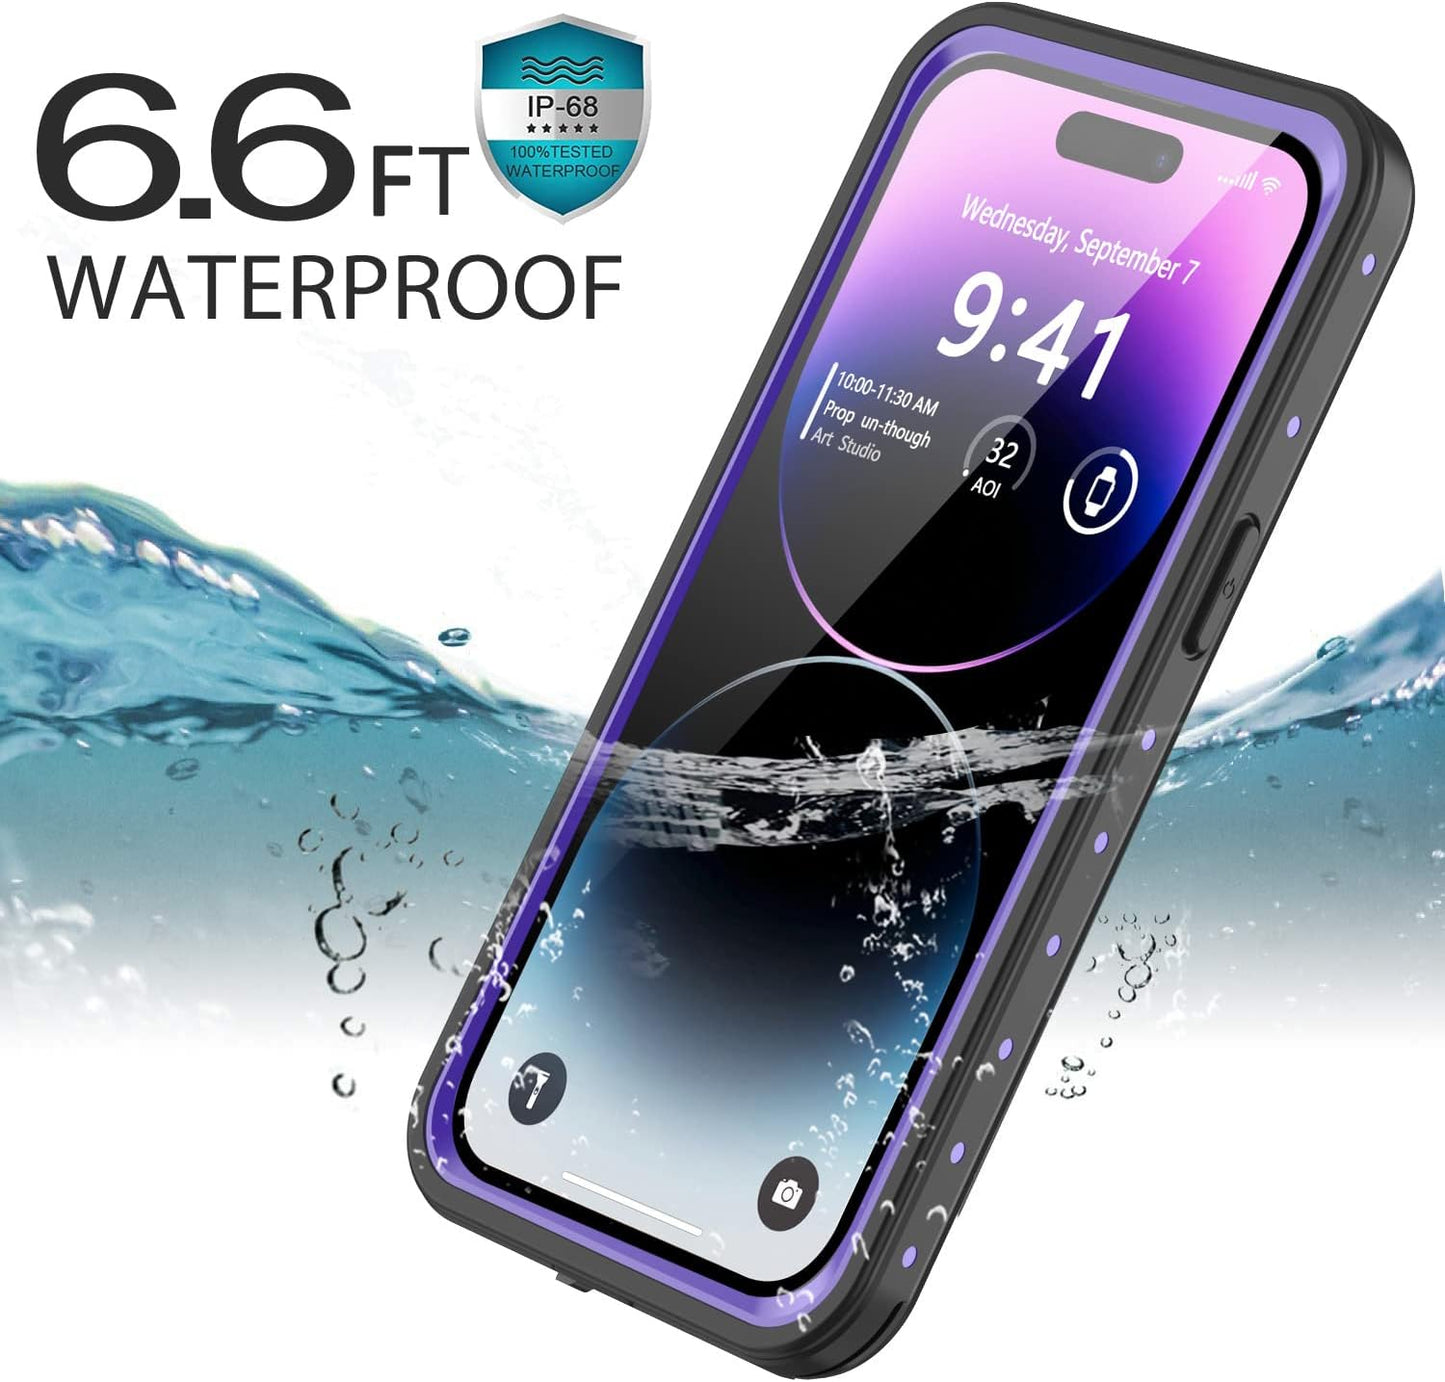 OAKTREE Shockproof Waterproof Full-Body iPhone Case